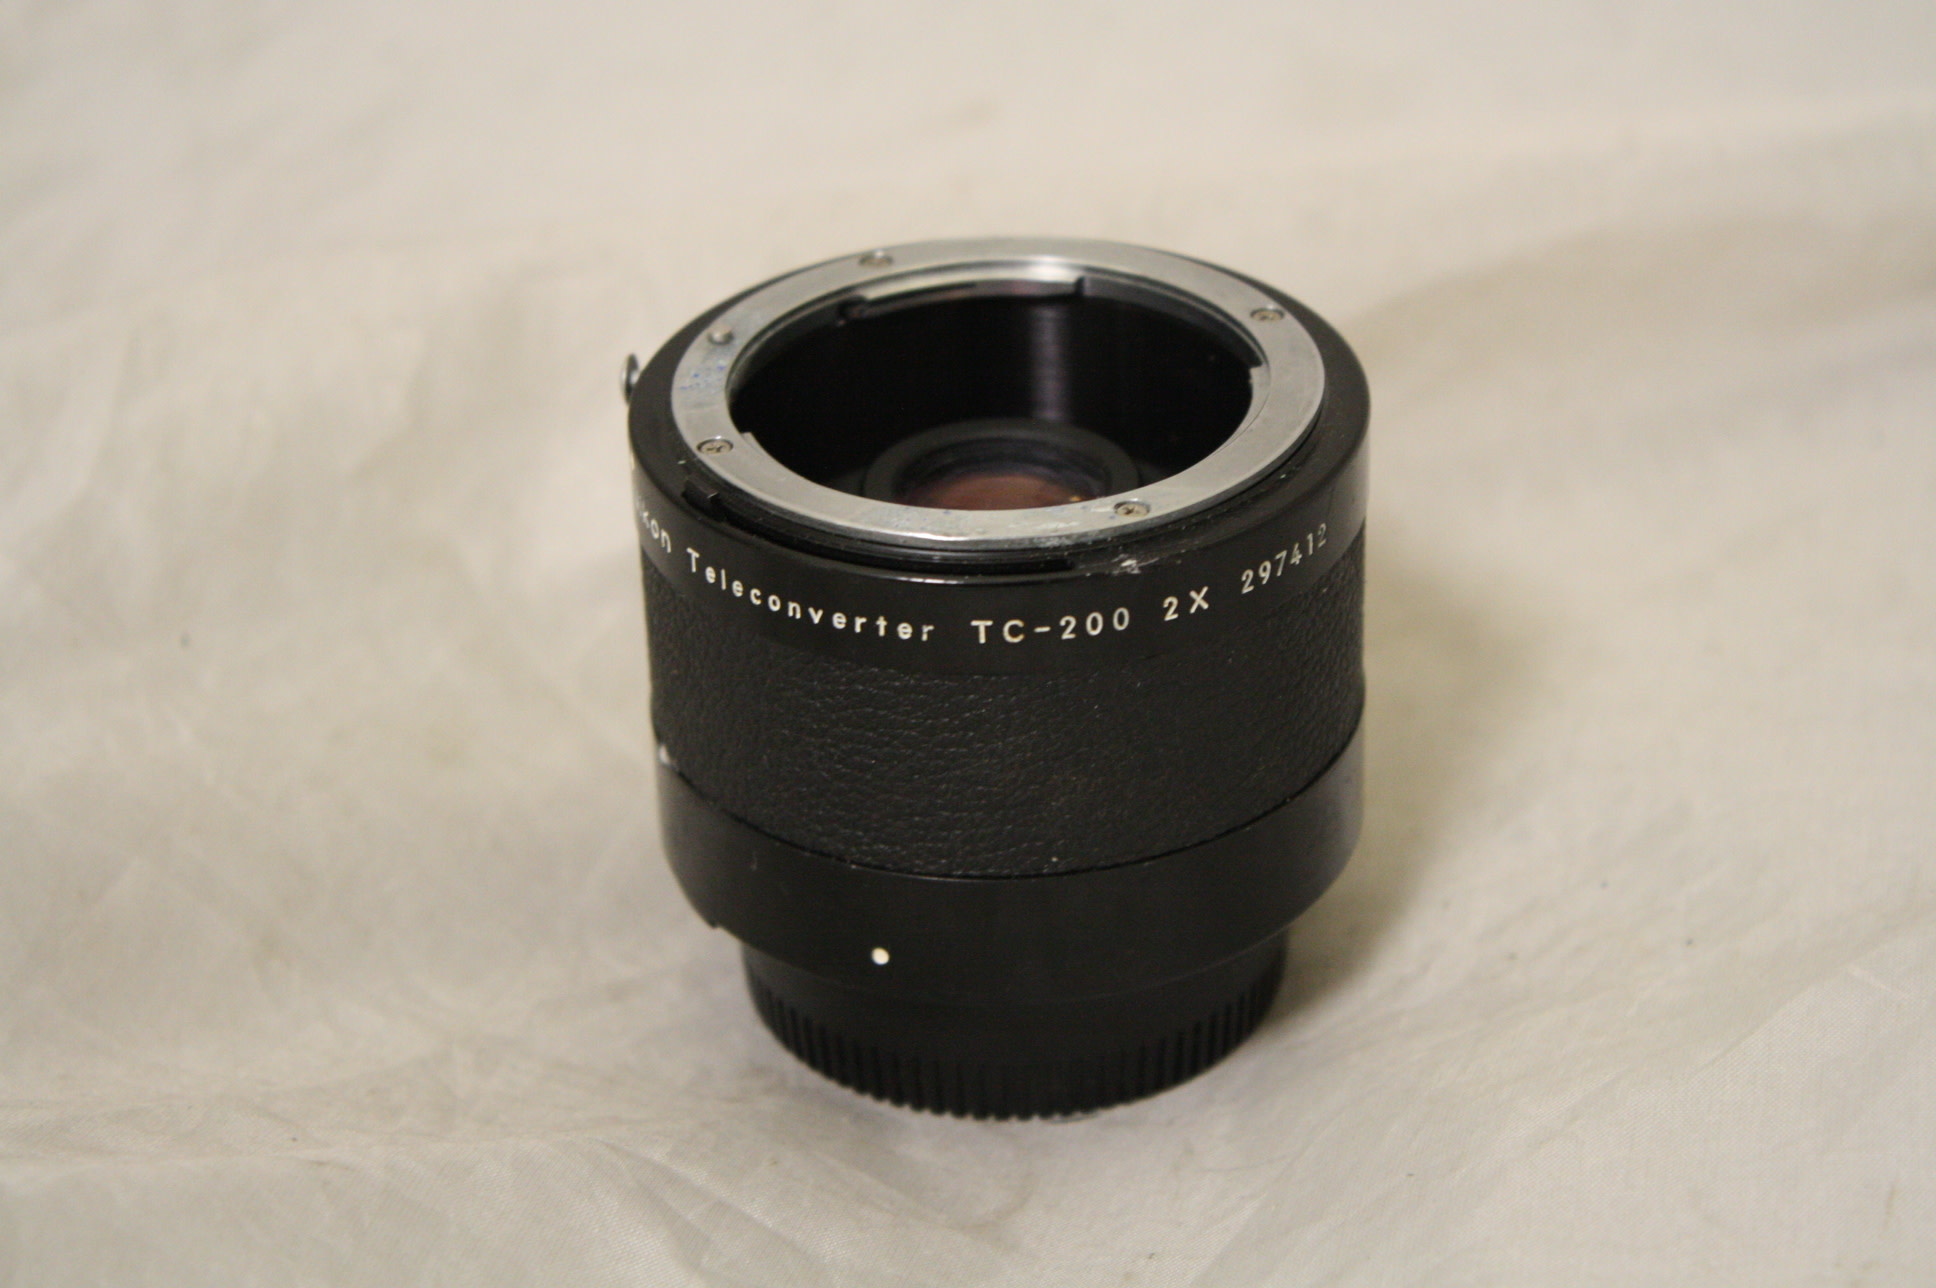 Nikon Ai Teleconverter TC-200 2X Manual Focus Lens